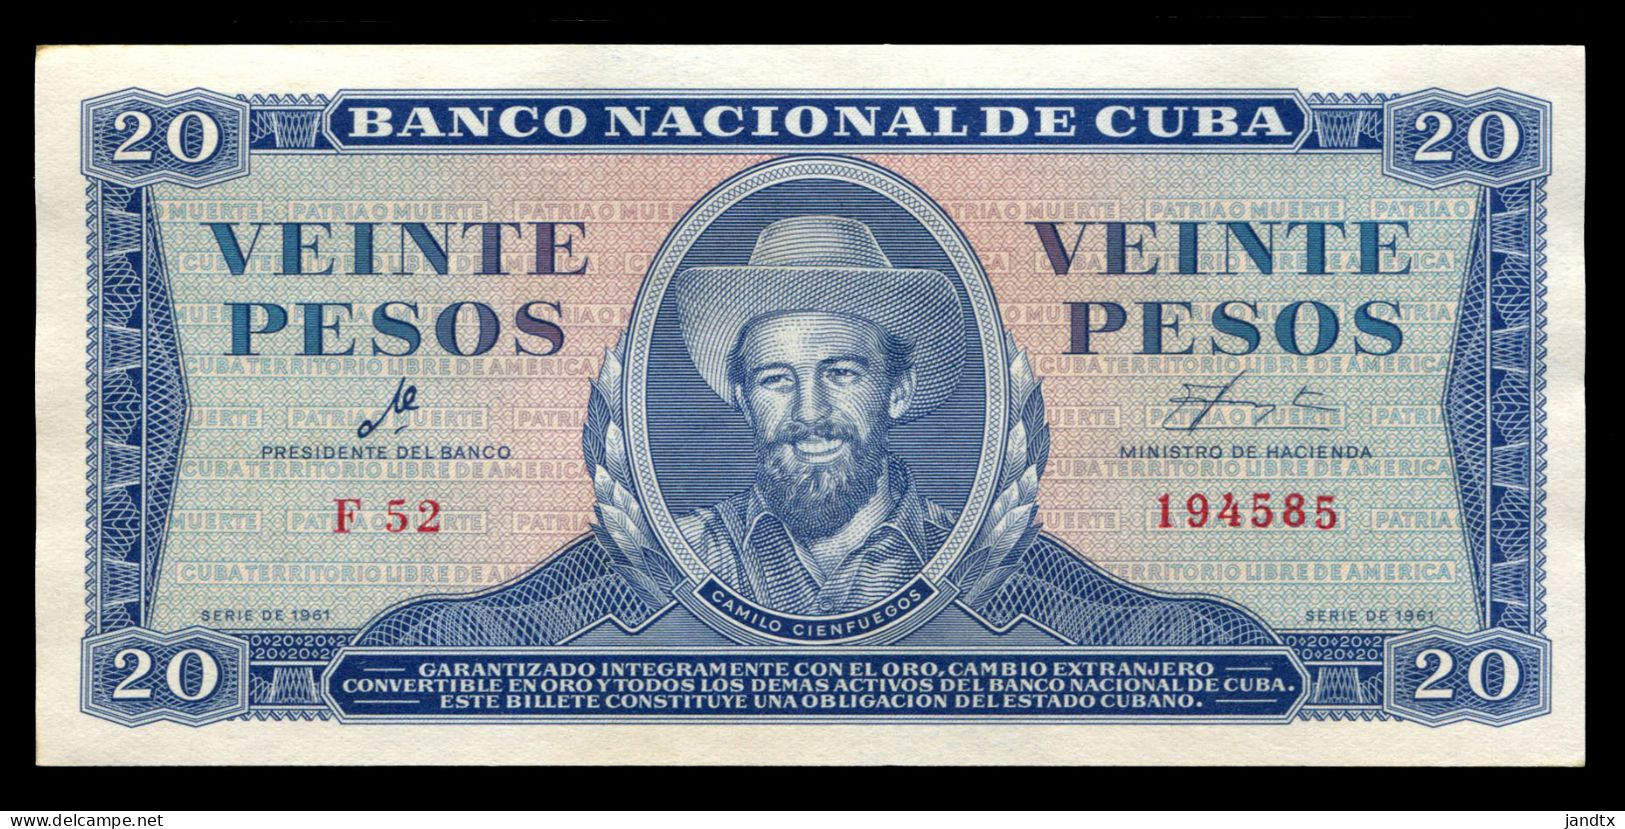 CUBA 20 PESOS 1961 FIRMA DEL CHE SC- AUNC - Cuba